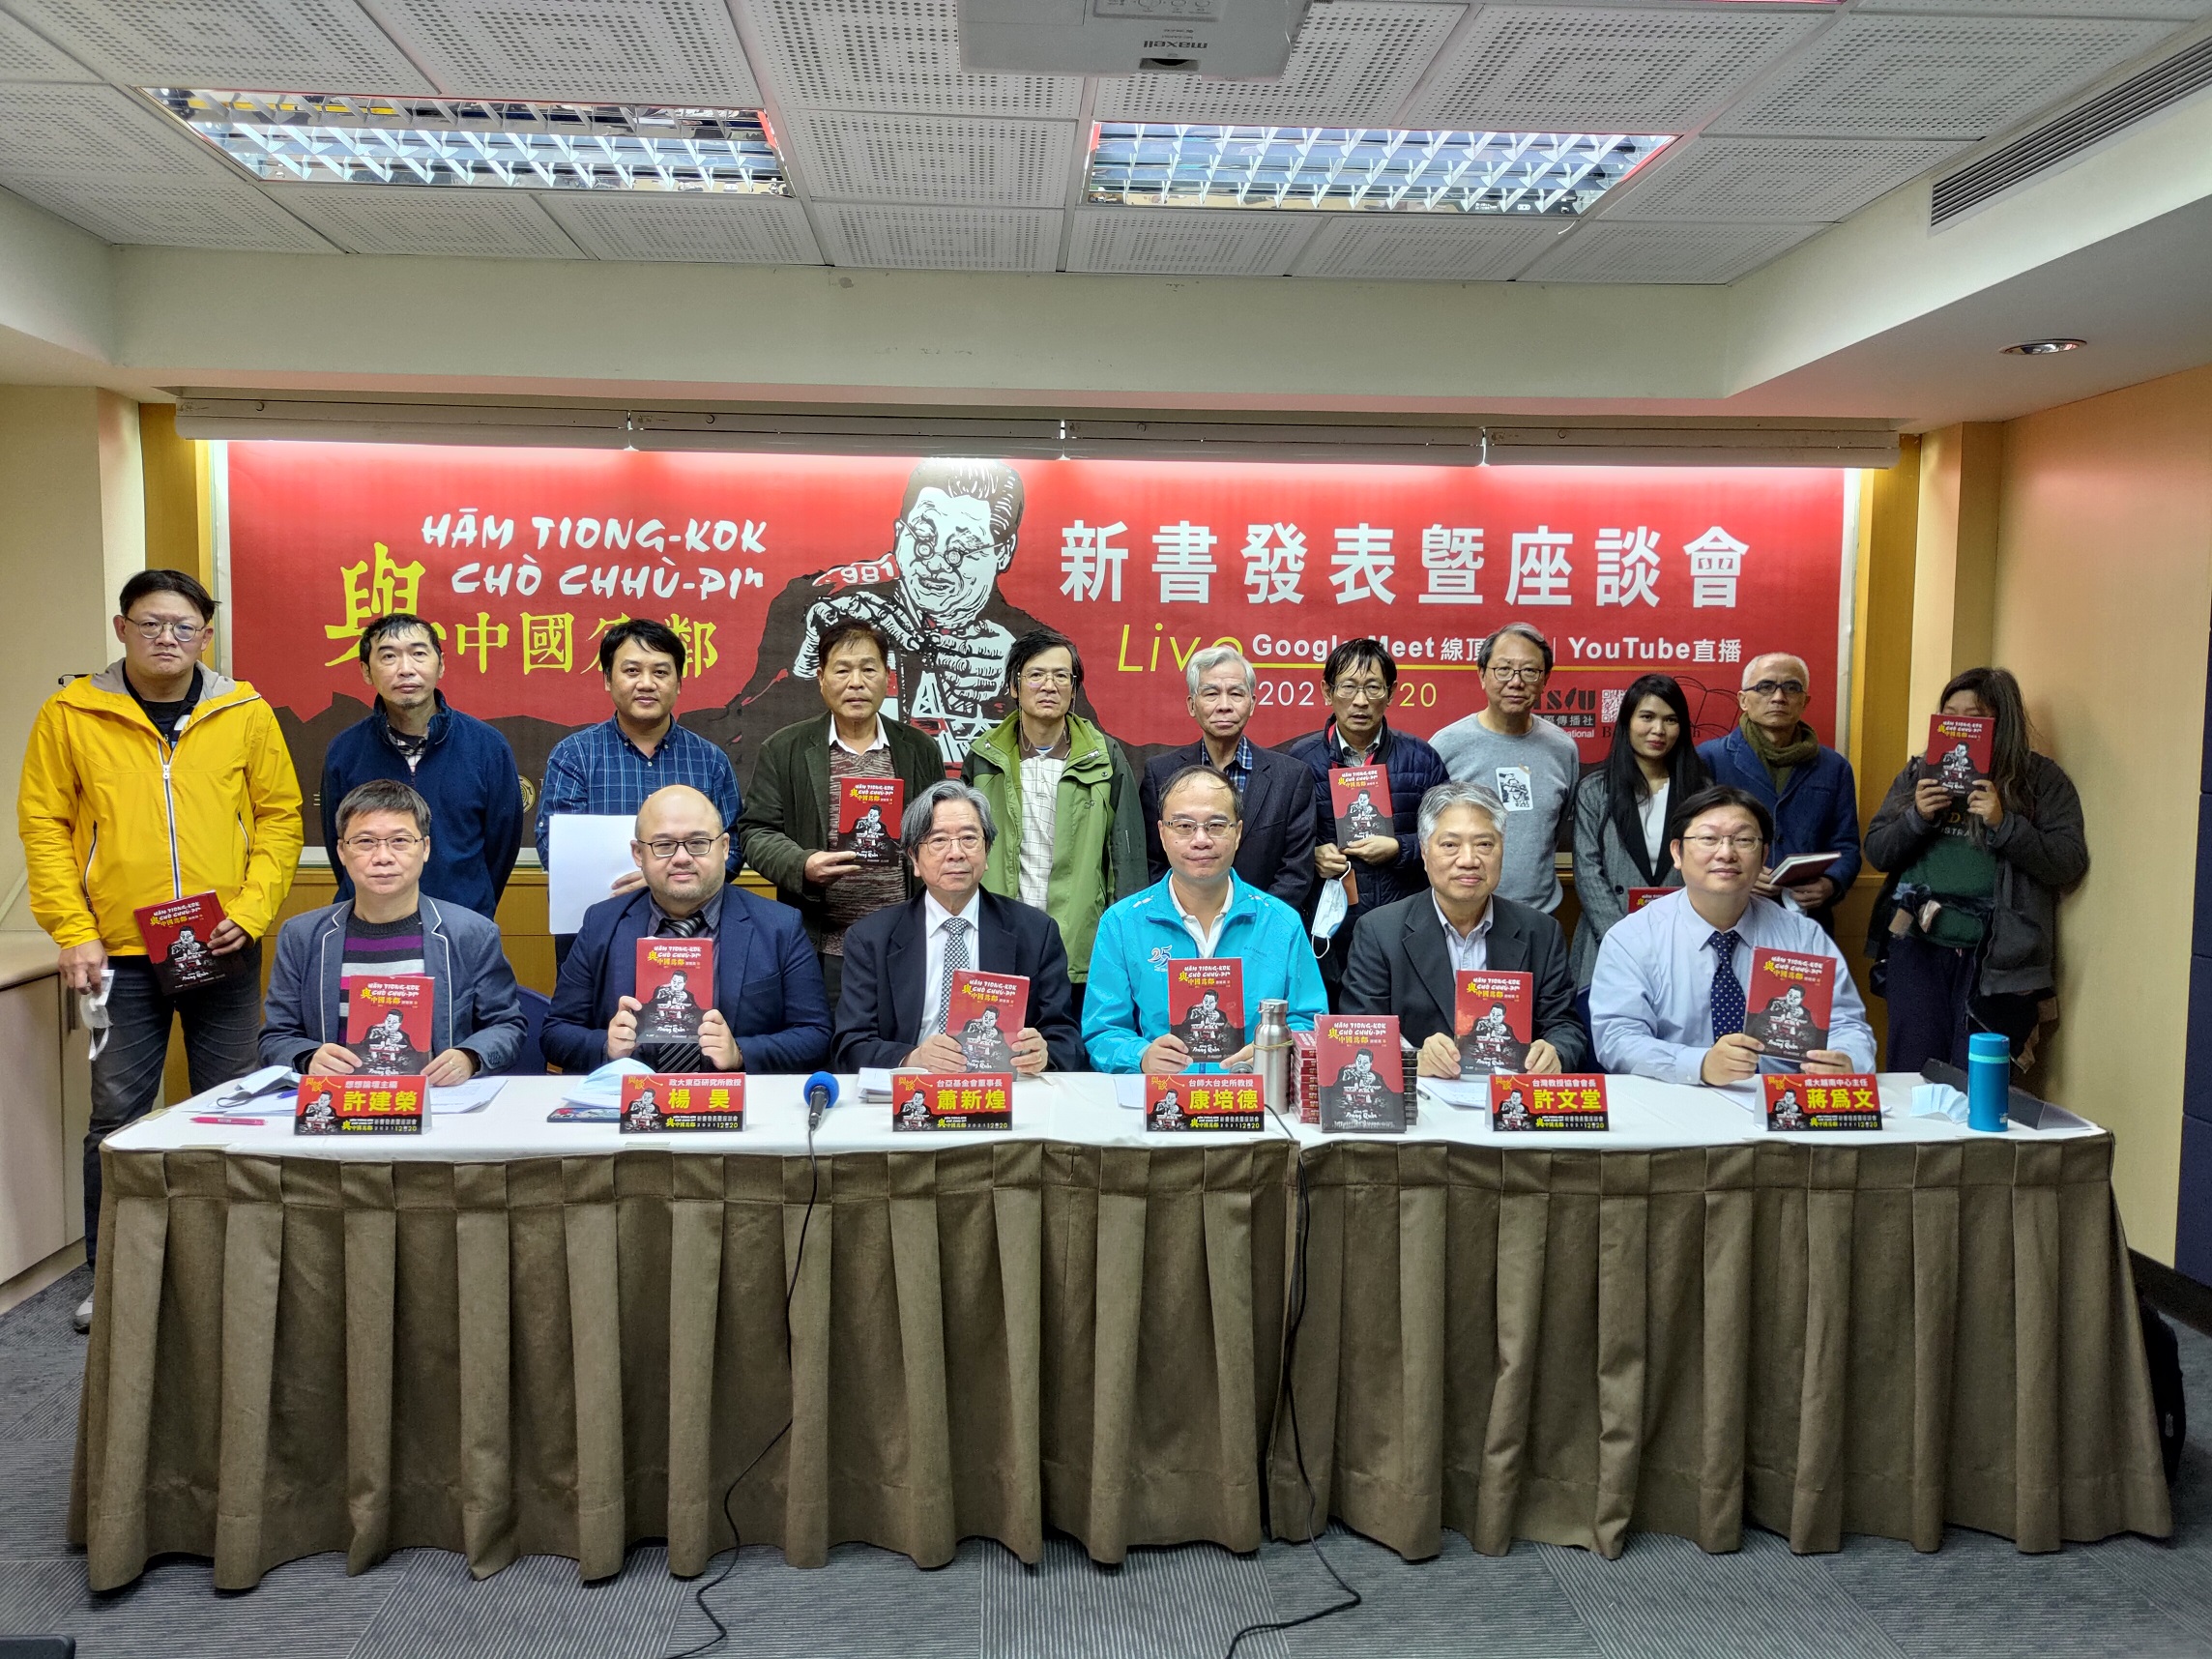 Lễ ra mắt sách mới: SỐNG VỚI TRUNG QUỐC《與中國為鄰》新書發表暨座談會New book launch: Neighboring China